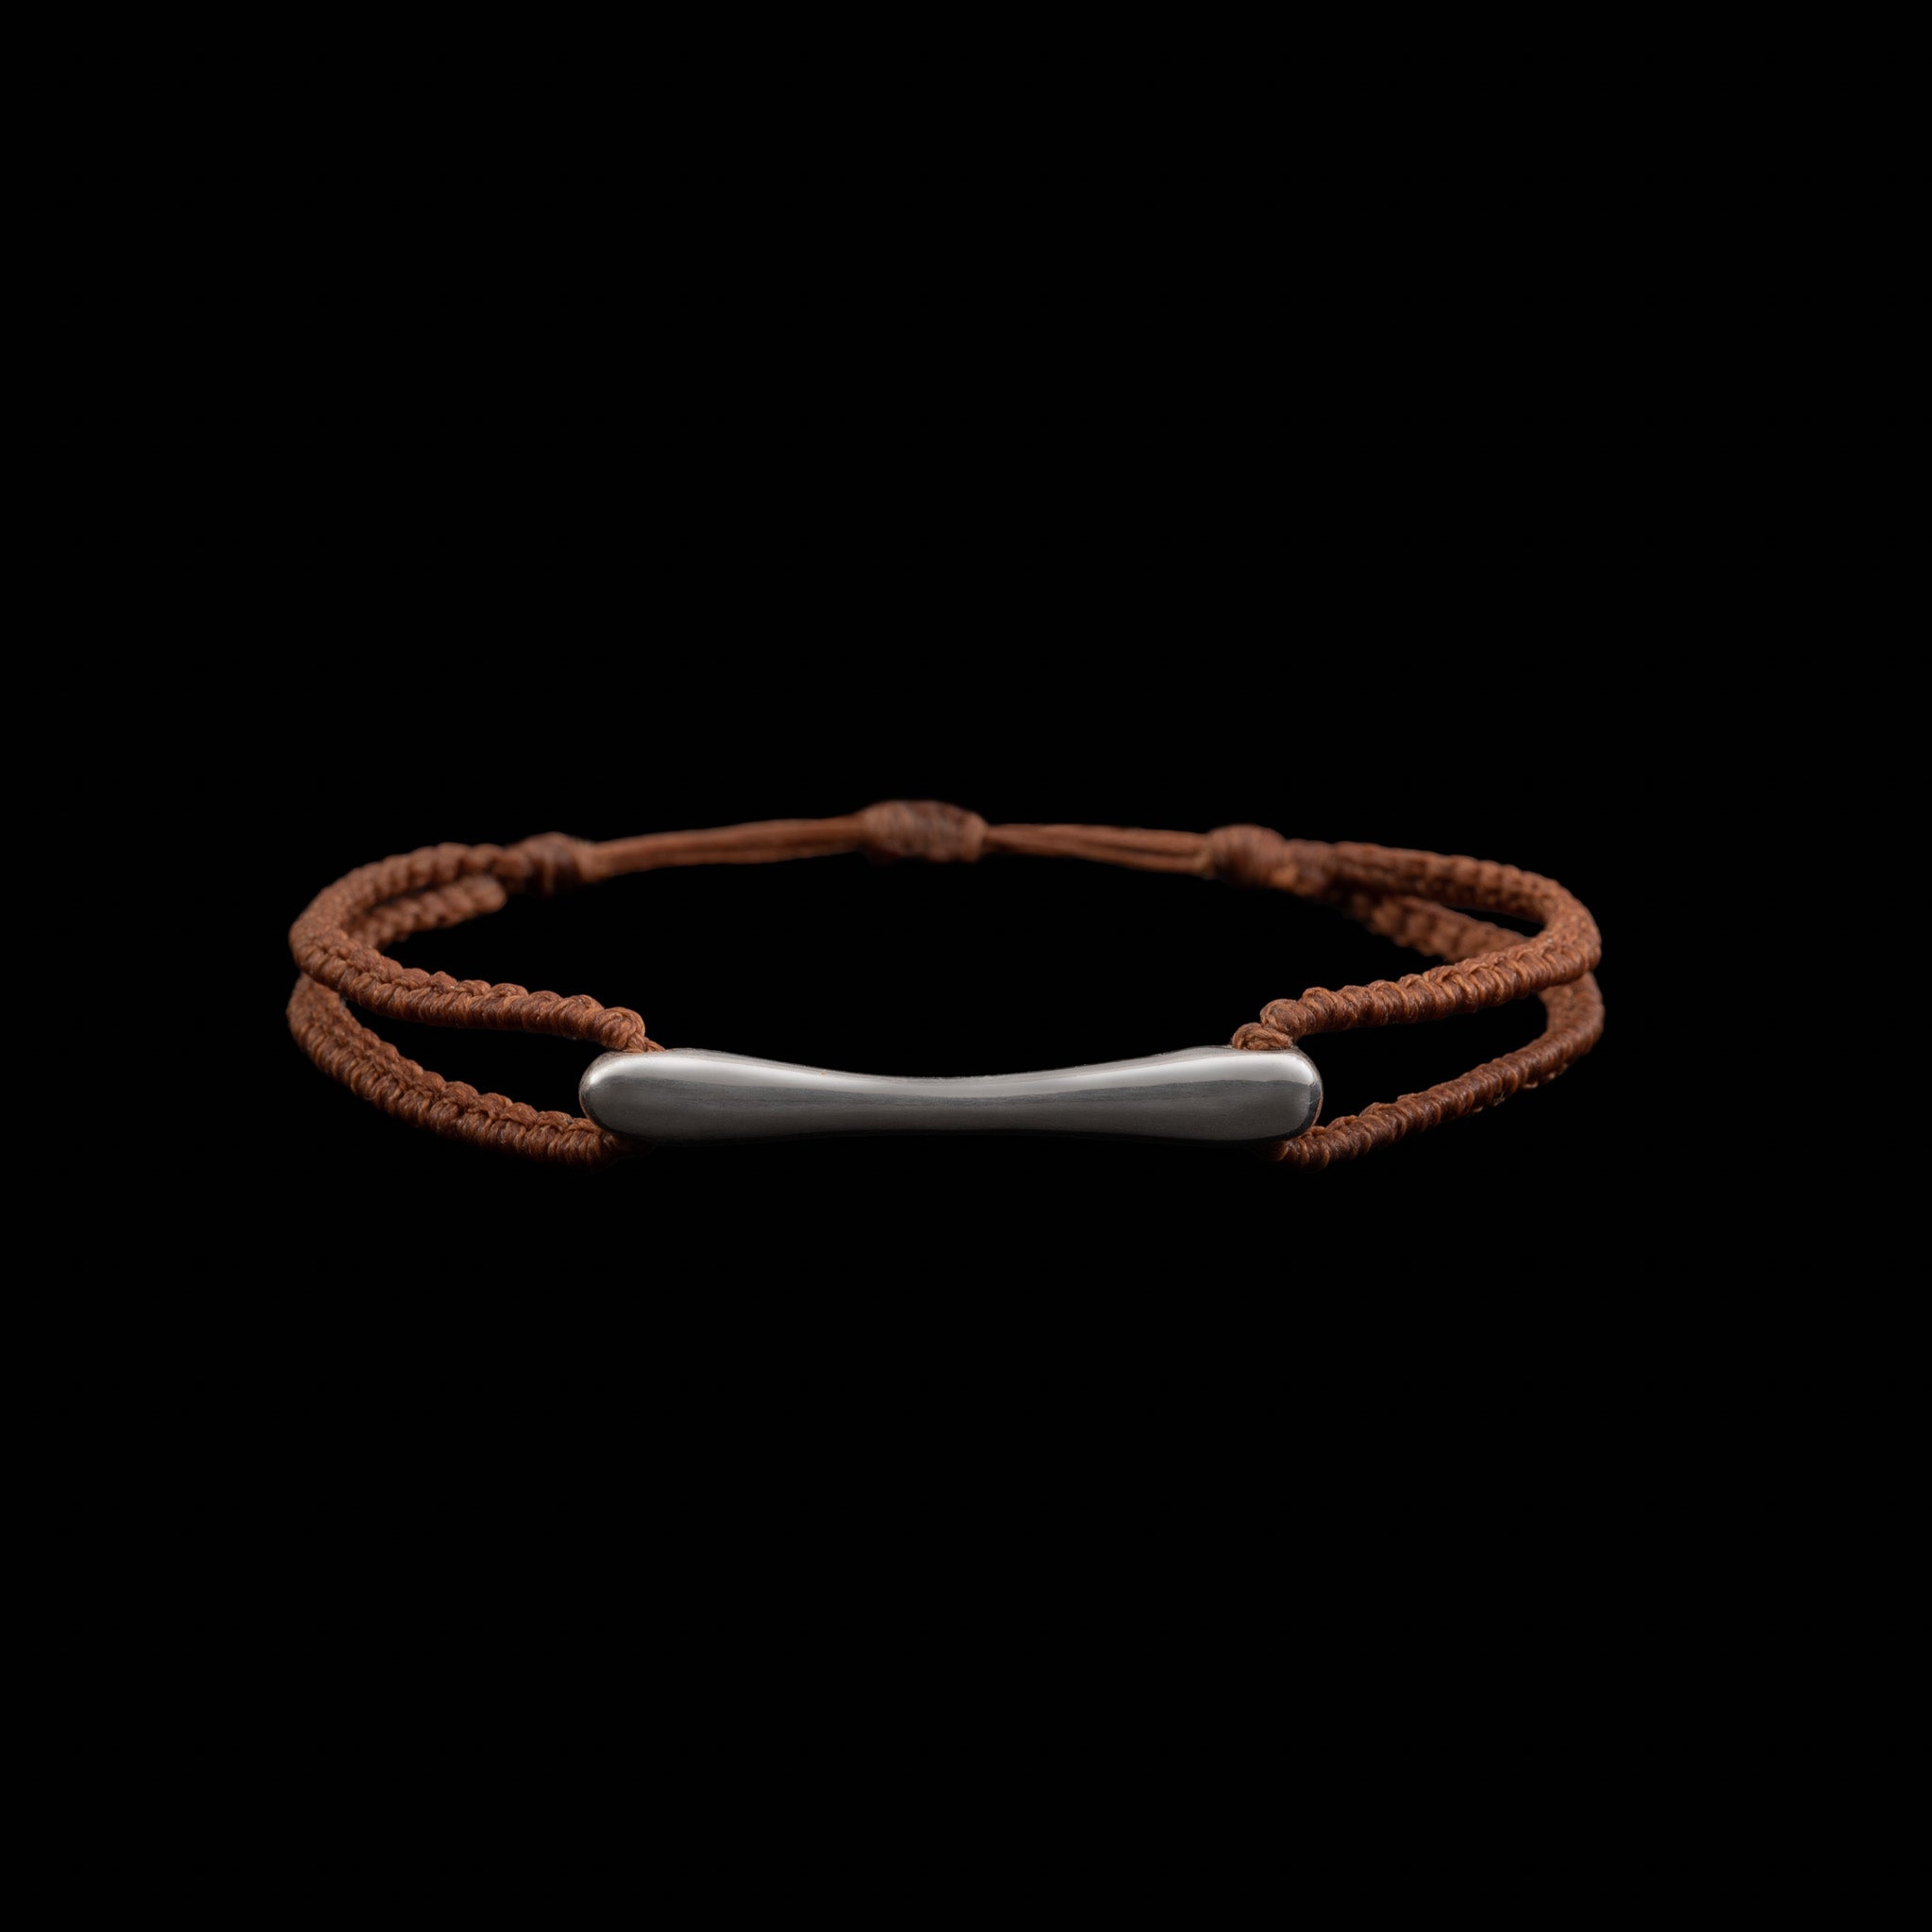 The Βone Bracelet